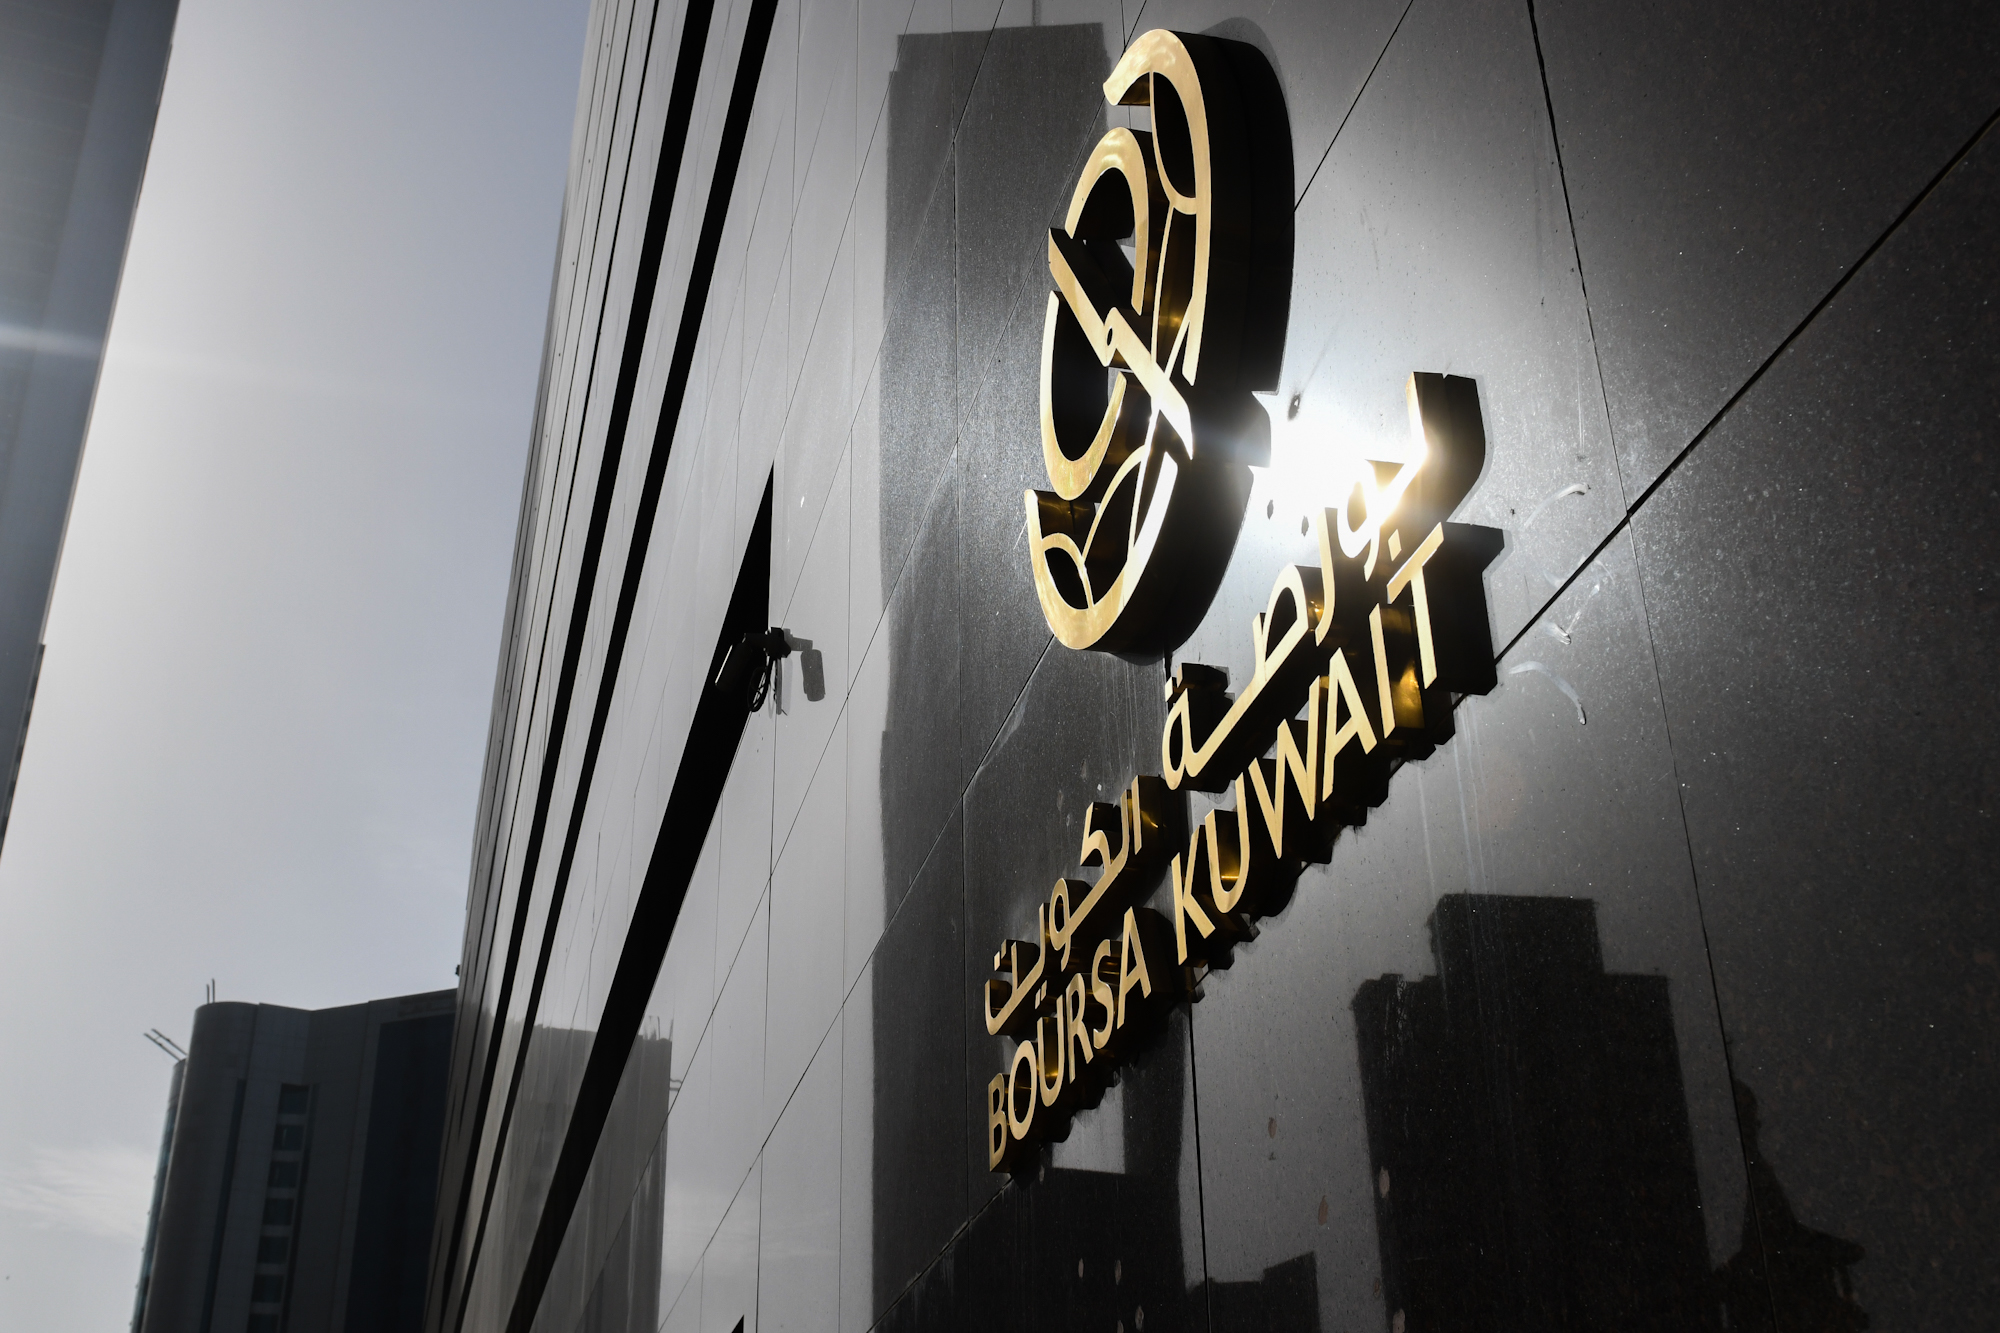 بورصة الكويت تغلق تعاملاتها على ارتفاع مؤشرها العام 13ر54 نقطة ليبلغ 22ر7077 بنسبة 77ر0 في المئة                                                                                                                                                          